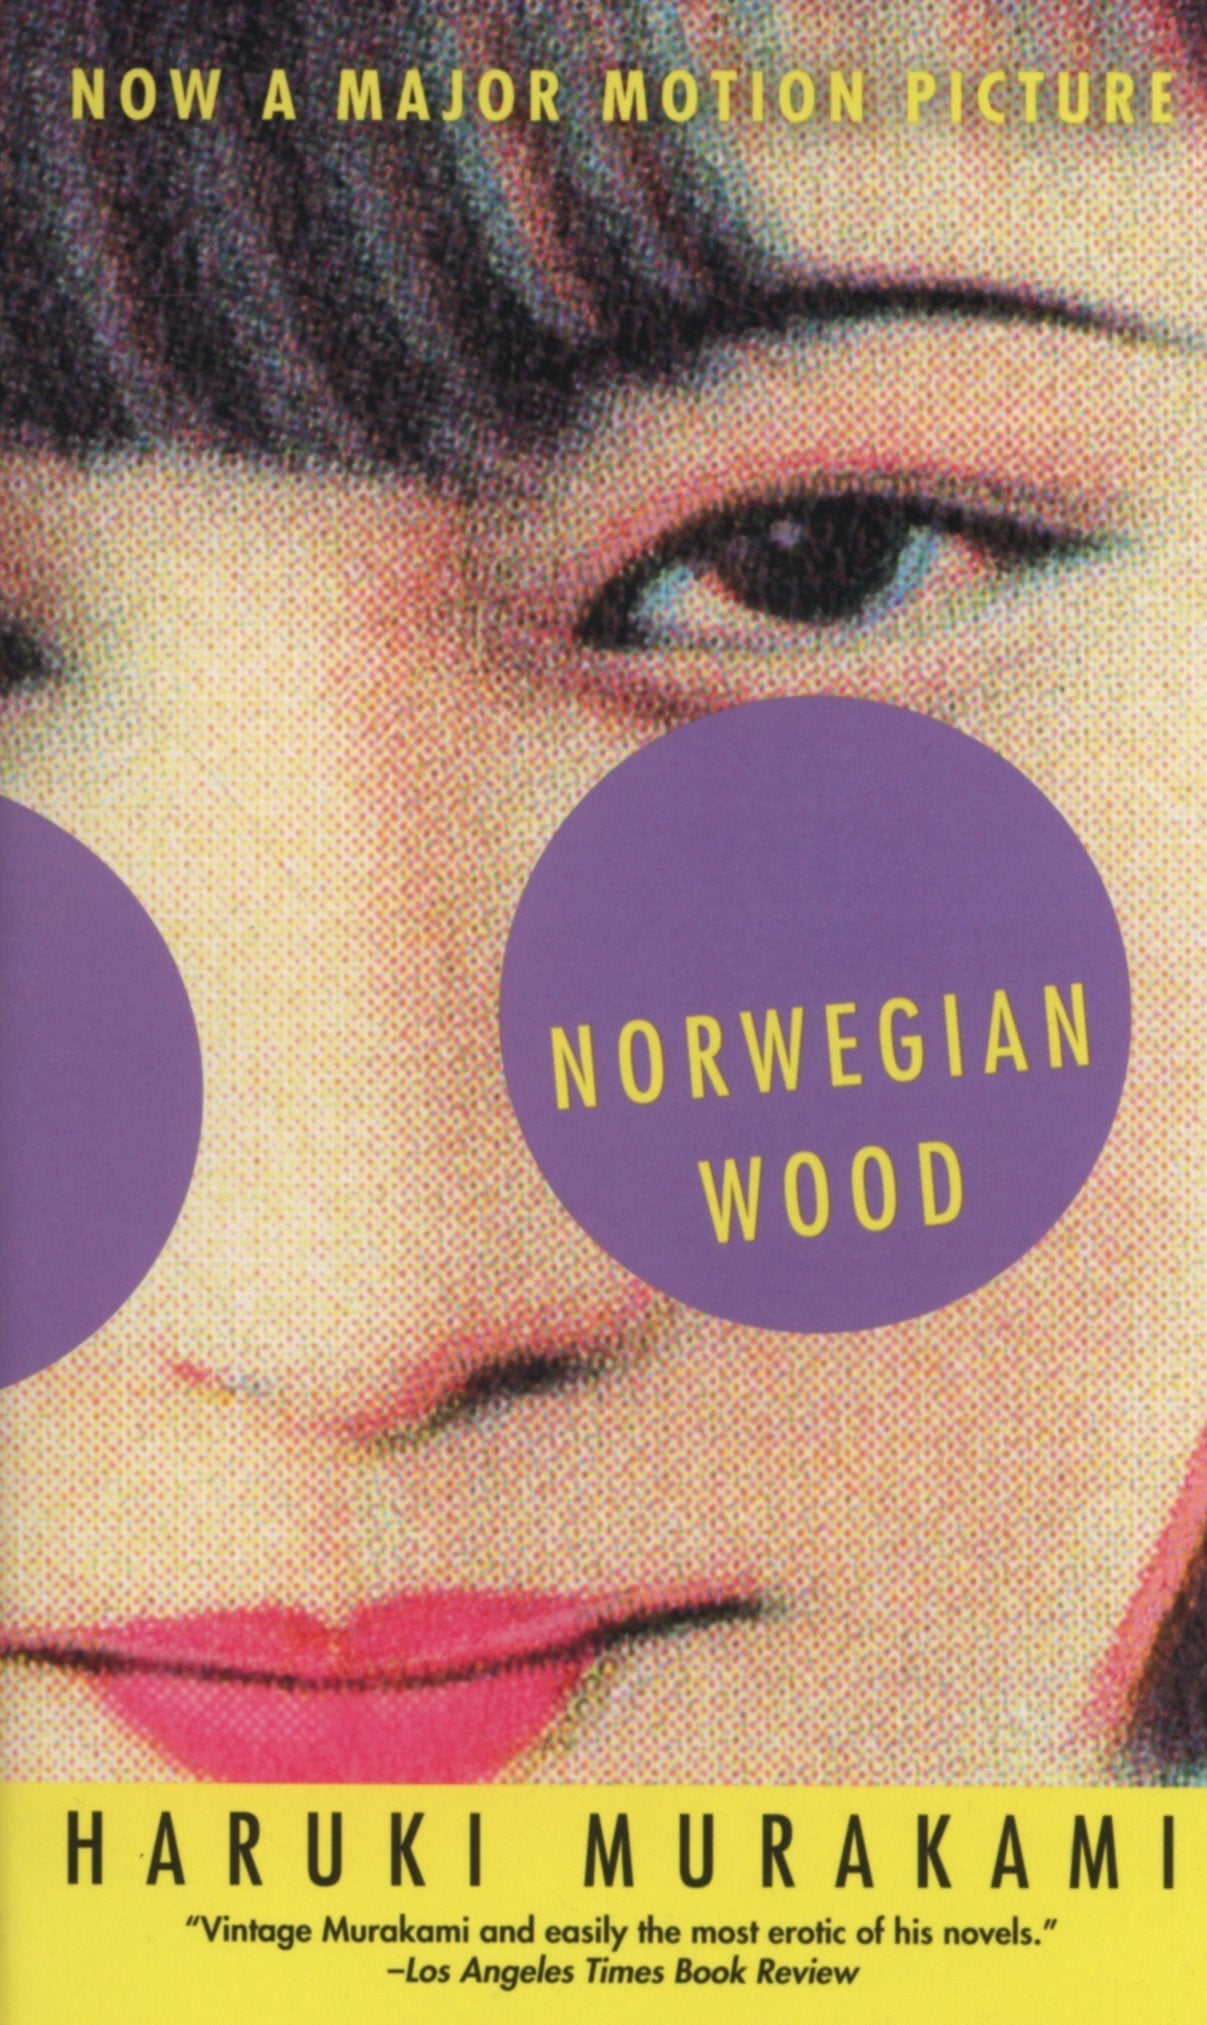 murakami haruki norwegian wood